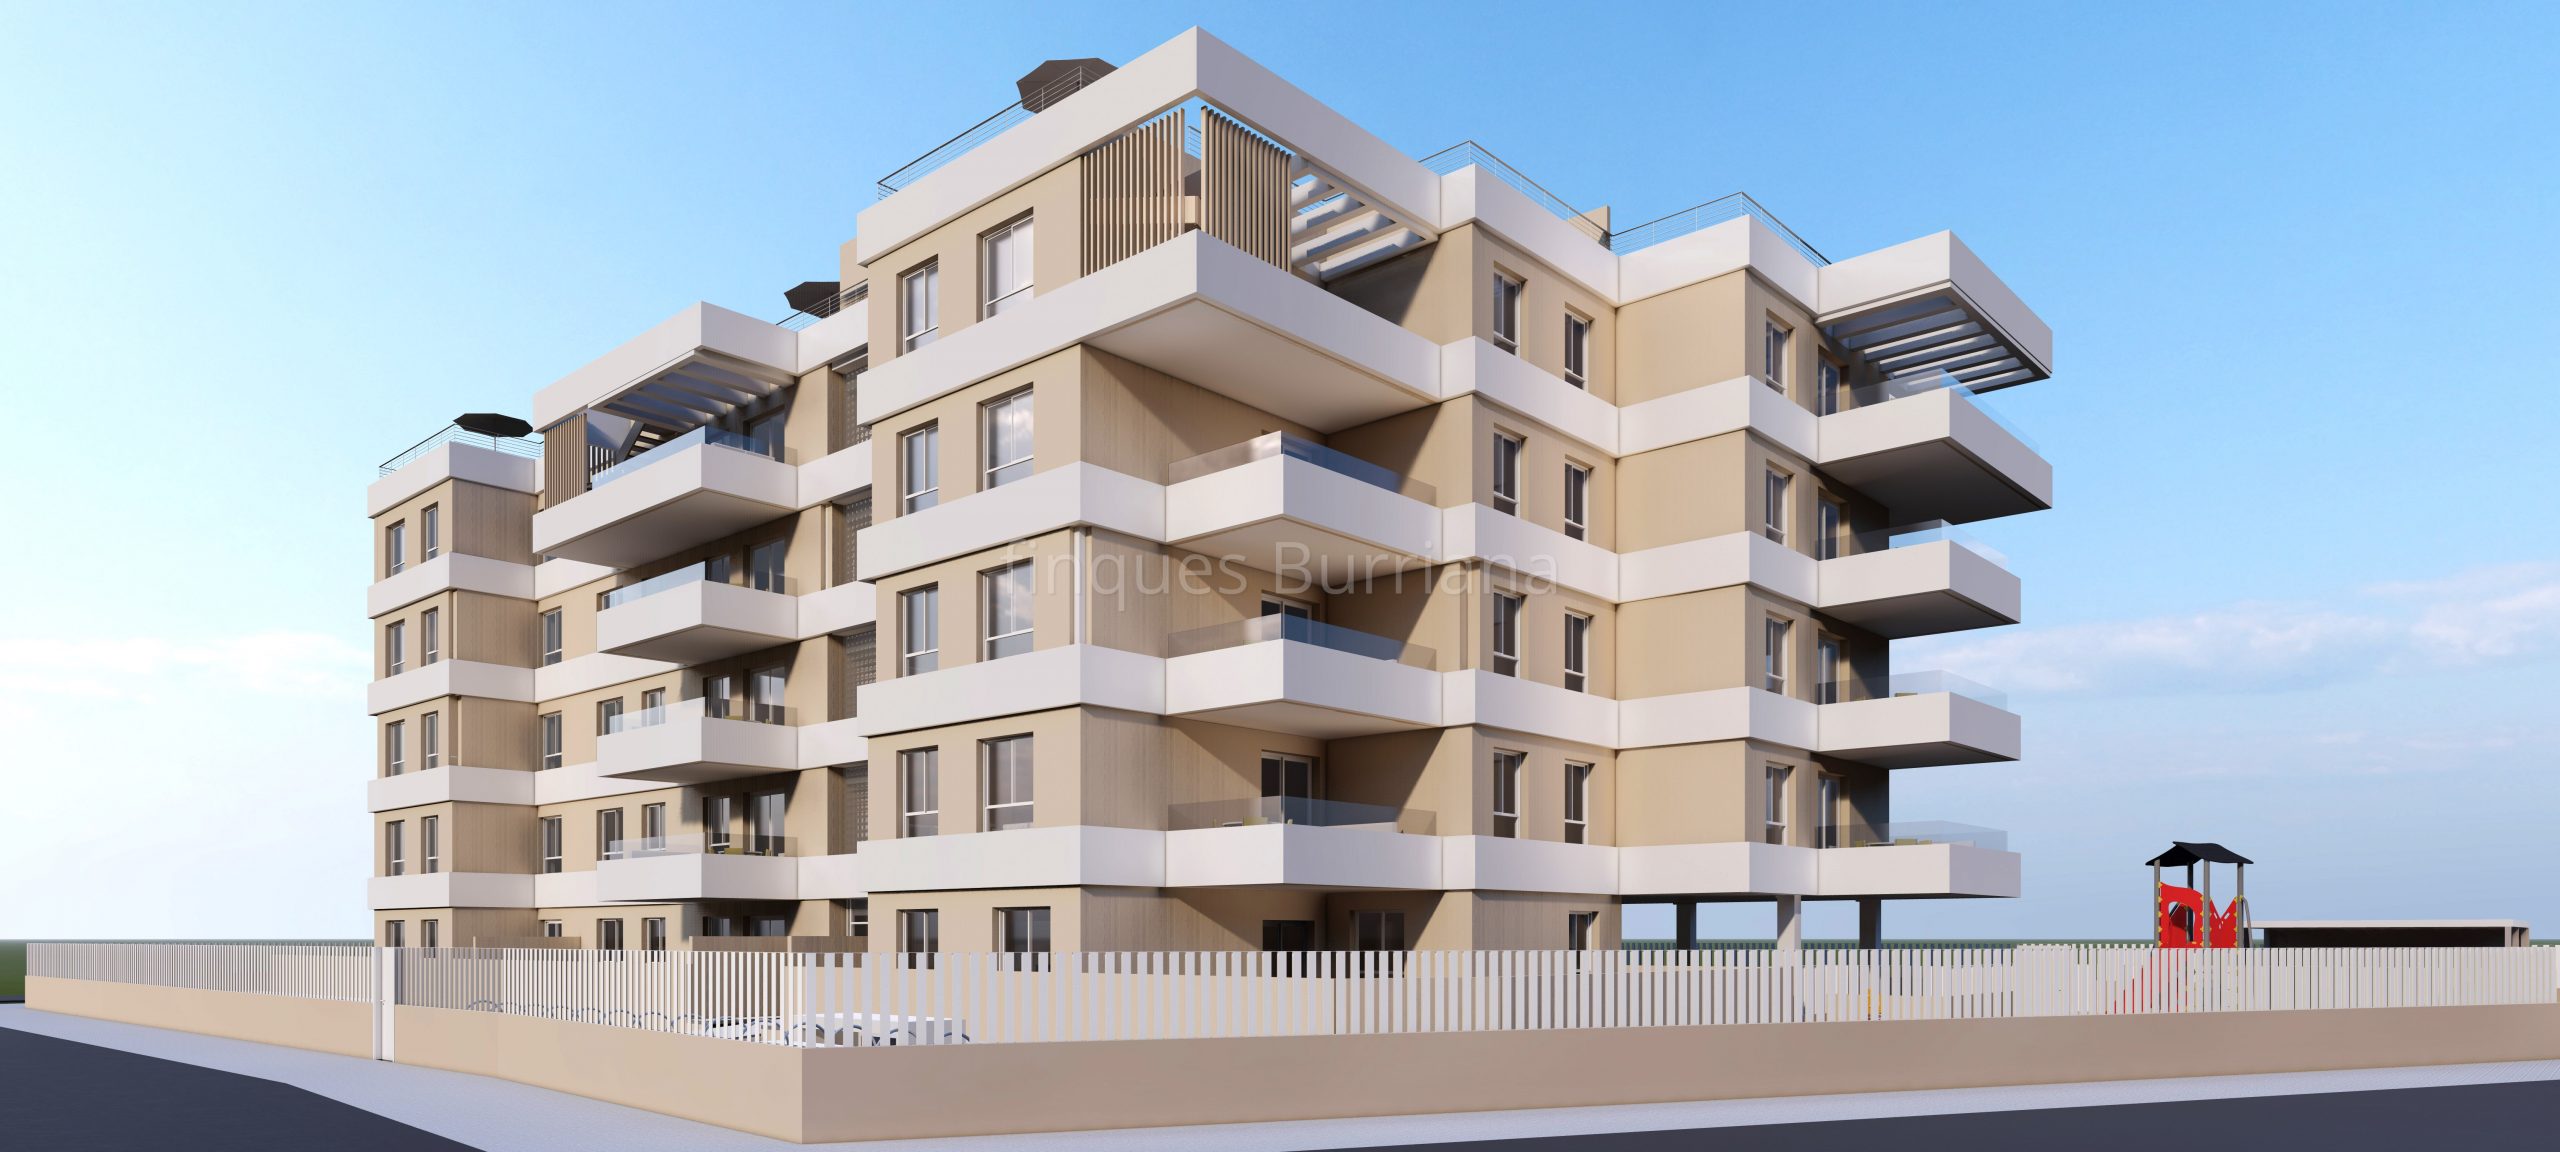 Próxima construcción de viviendas en Burriana (Castellón) zona Novenes de Calatrava